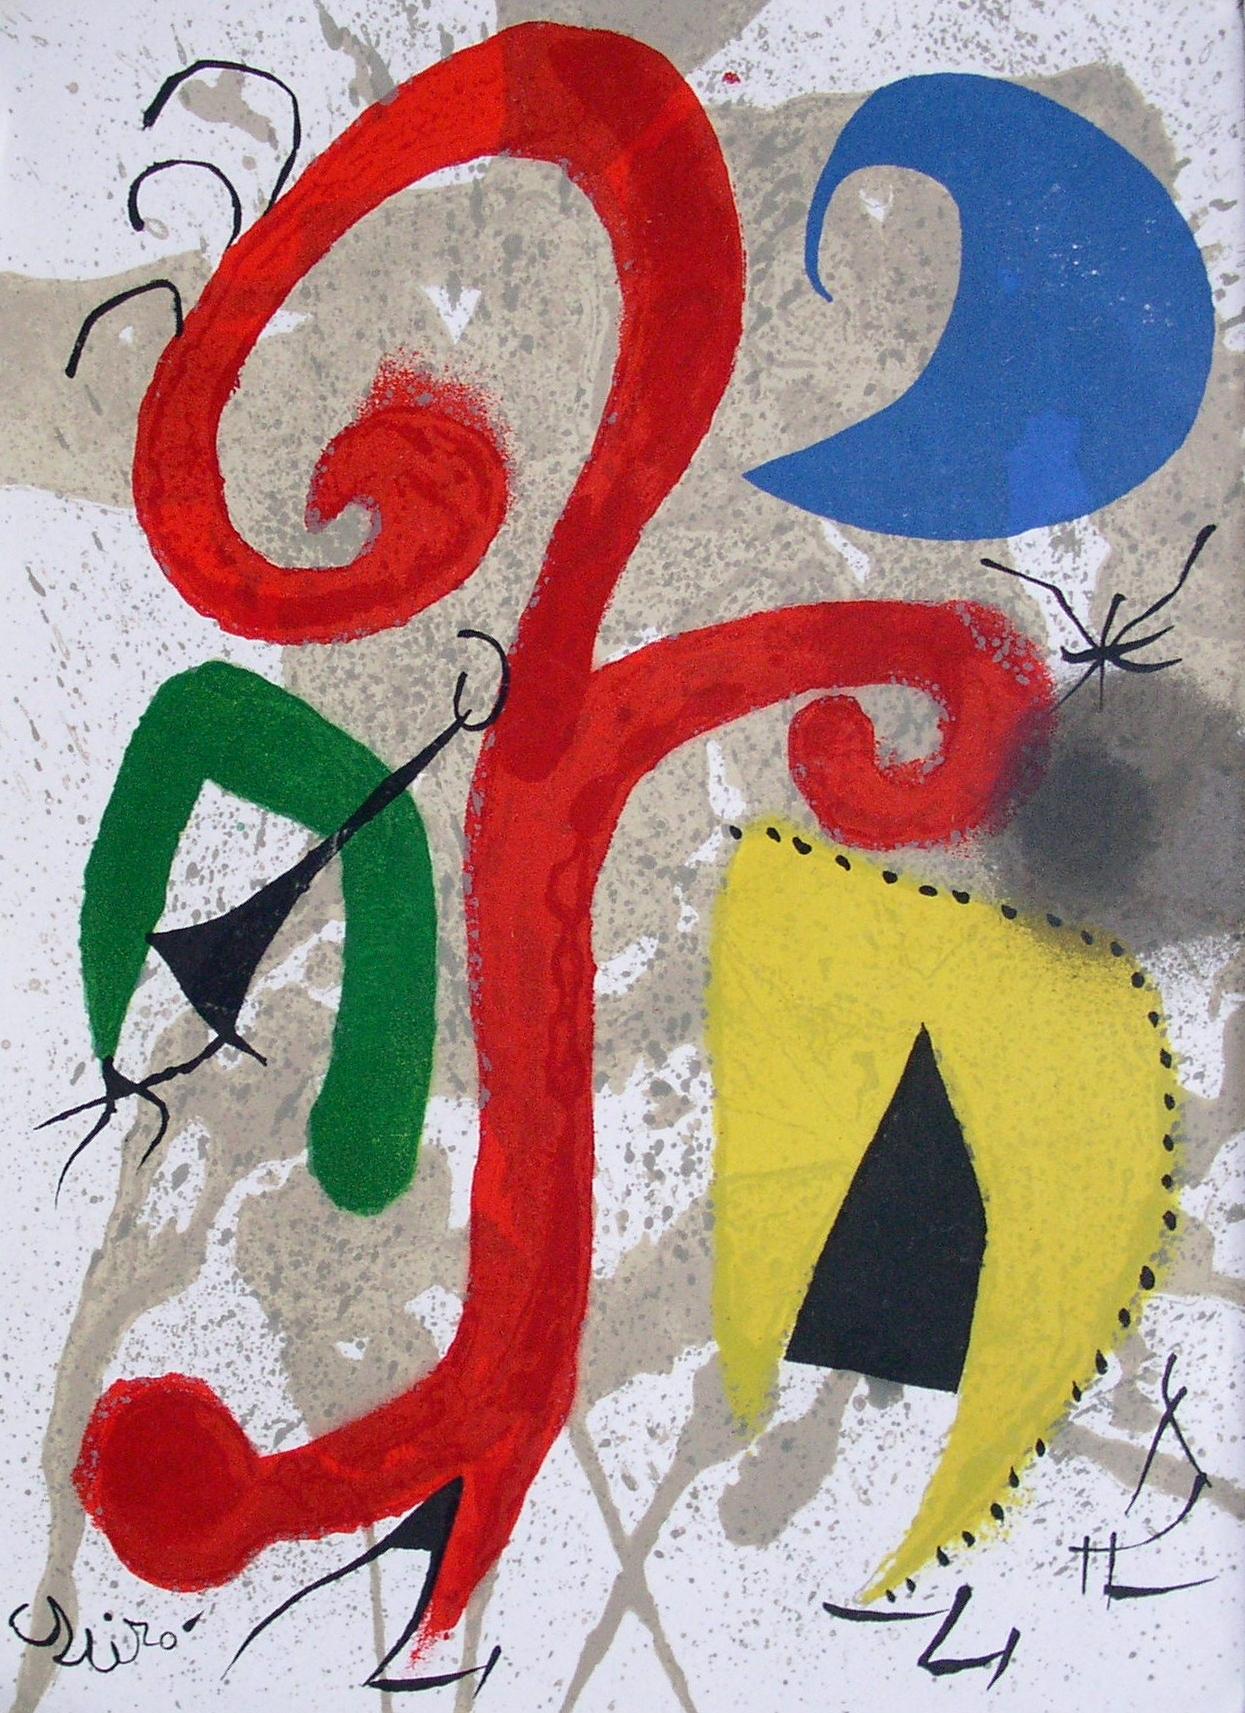 Joan Miró Abstract Print - Garden Under the Moonlight - Original lithograph, 1973